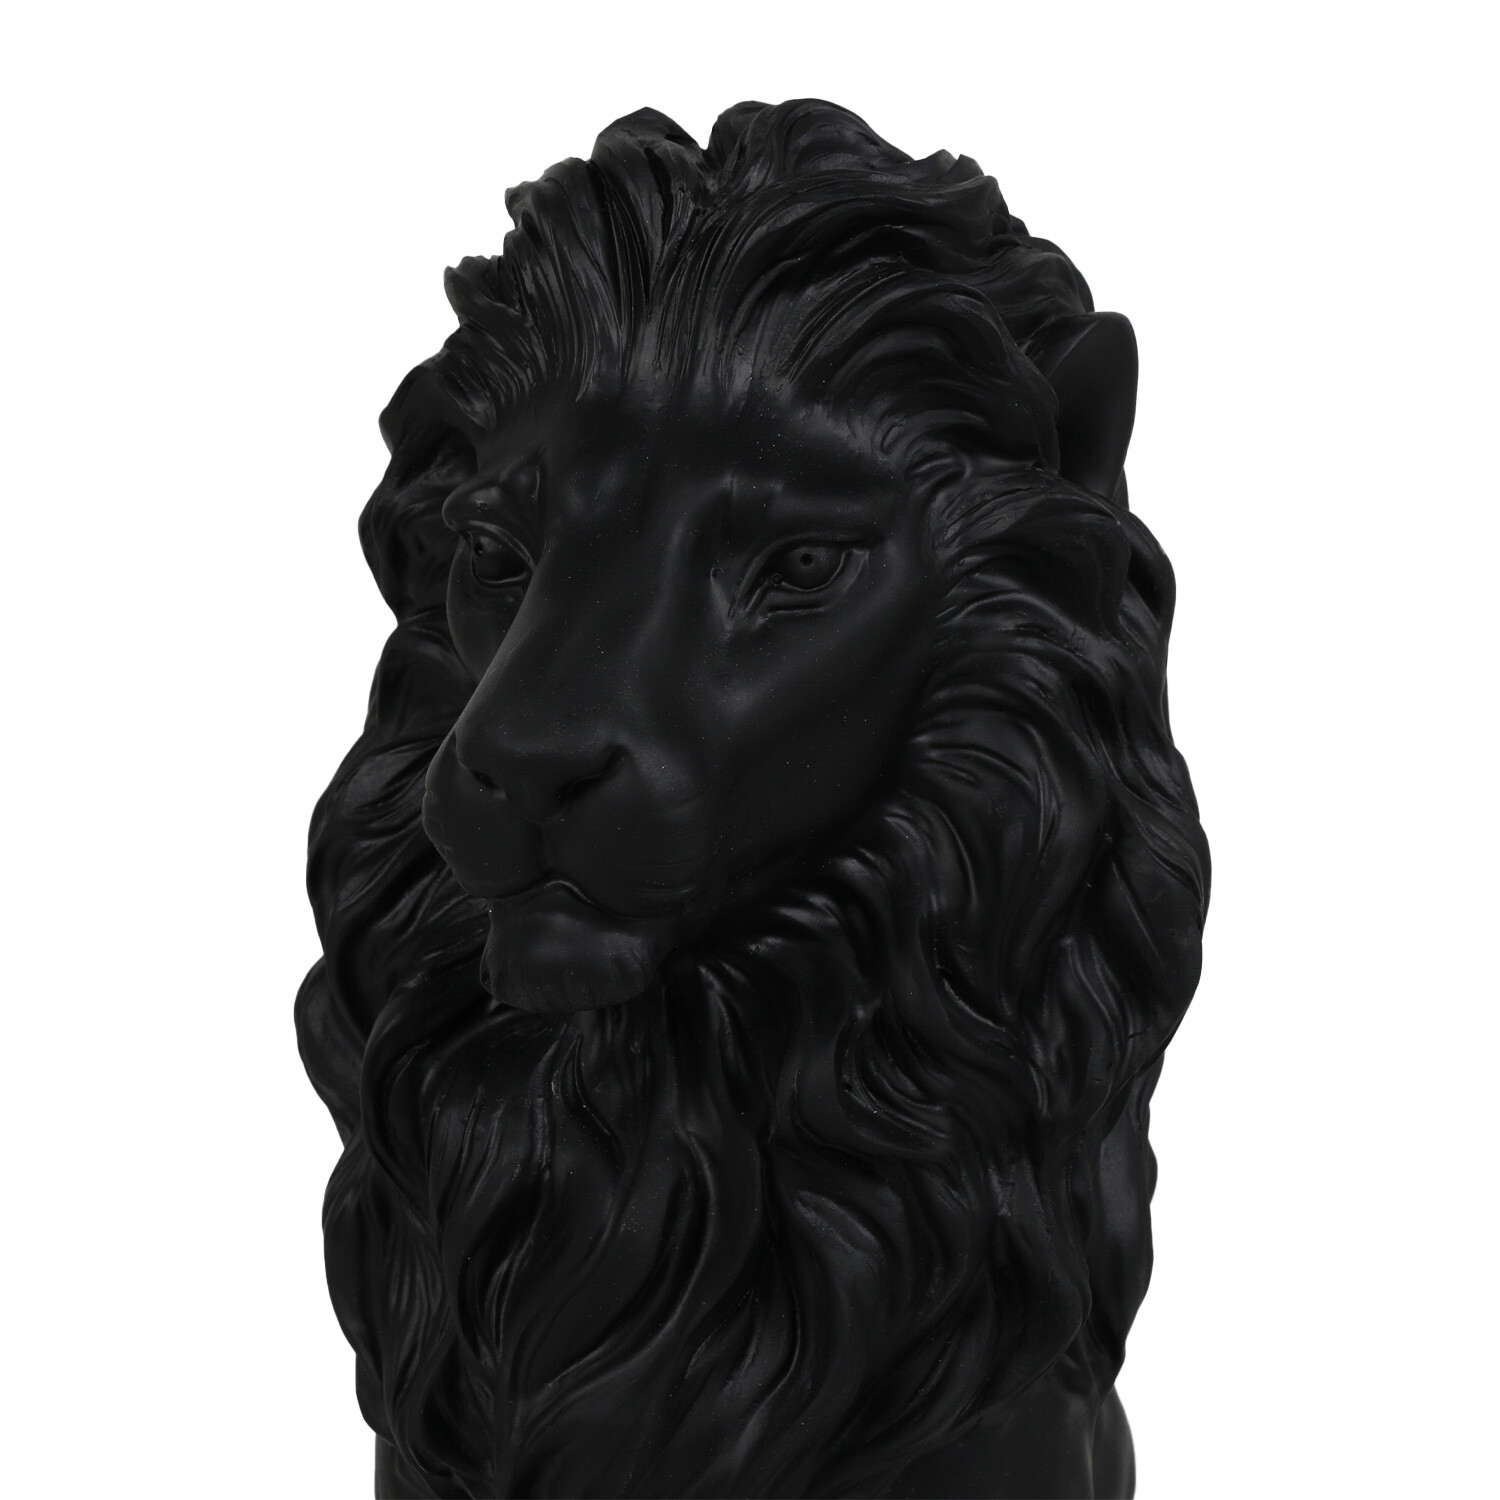 Matte Black Standing Lion Ornament Image 2